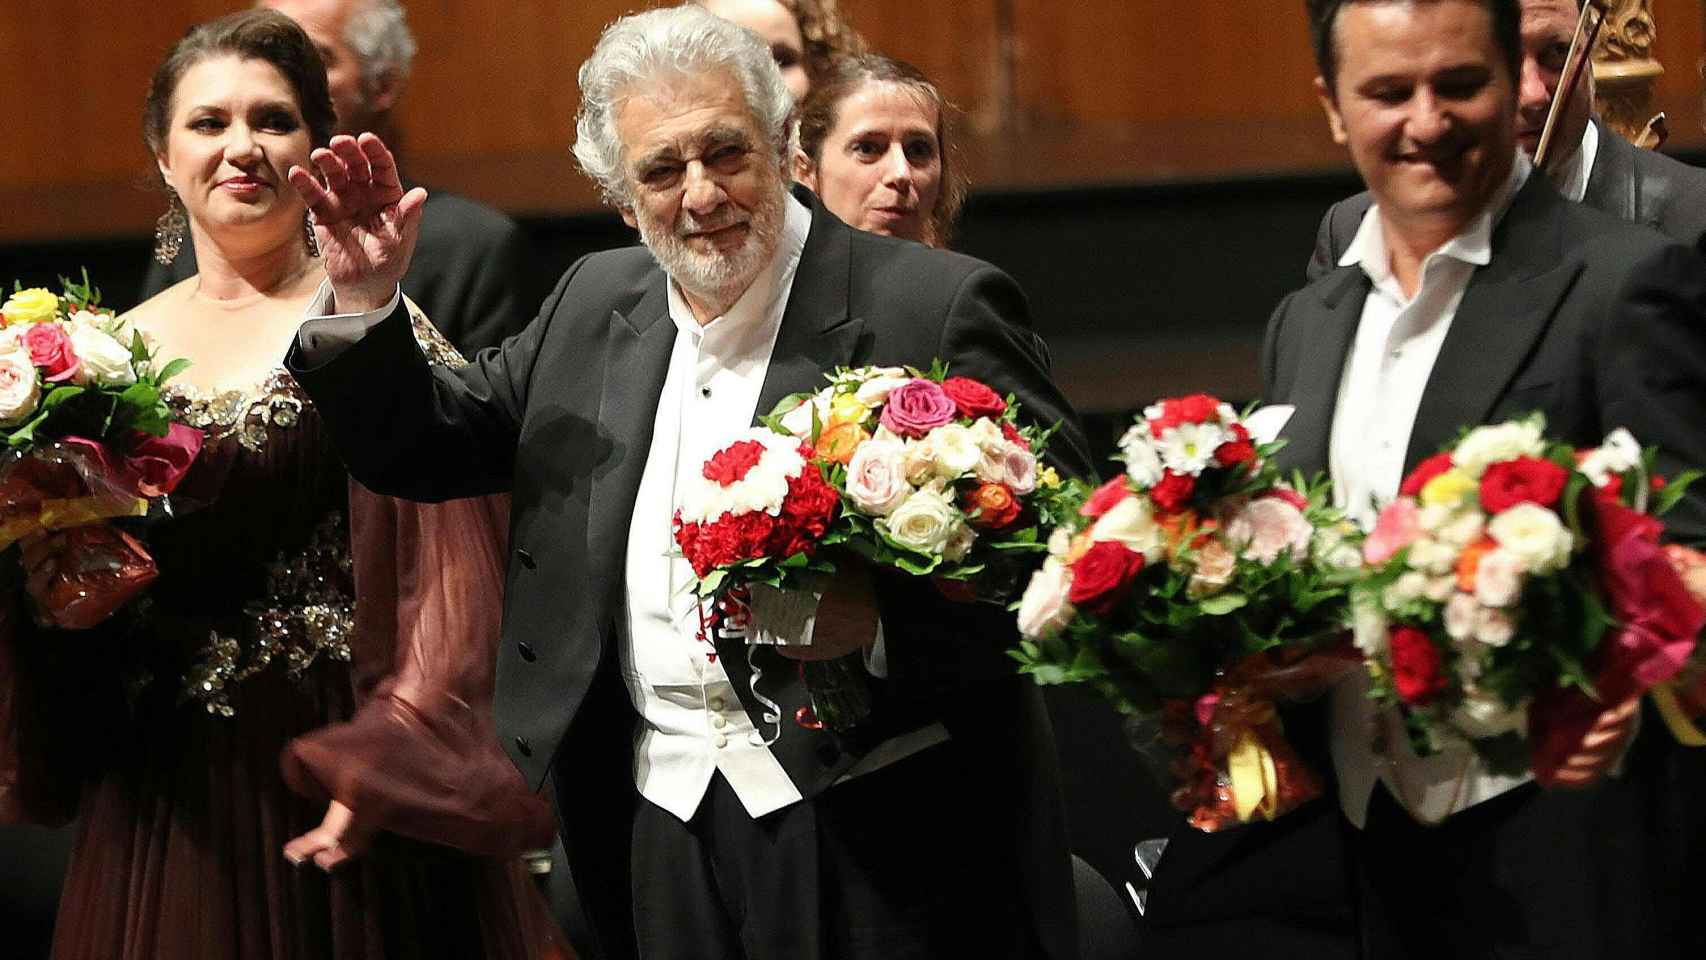 Domingo es aclamado por el público del Festival de Salzburgo pese a las acusaciones de acoso sexual